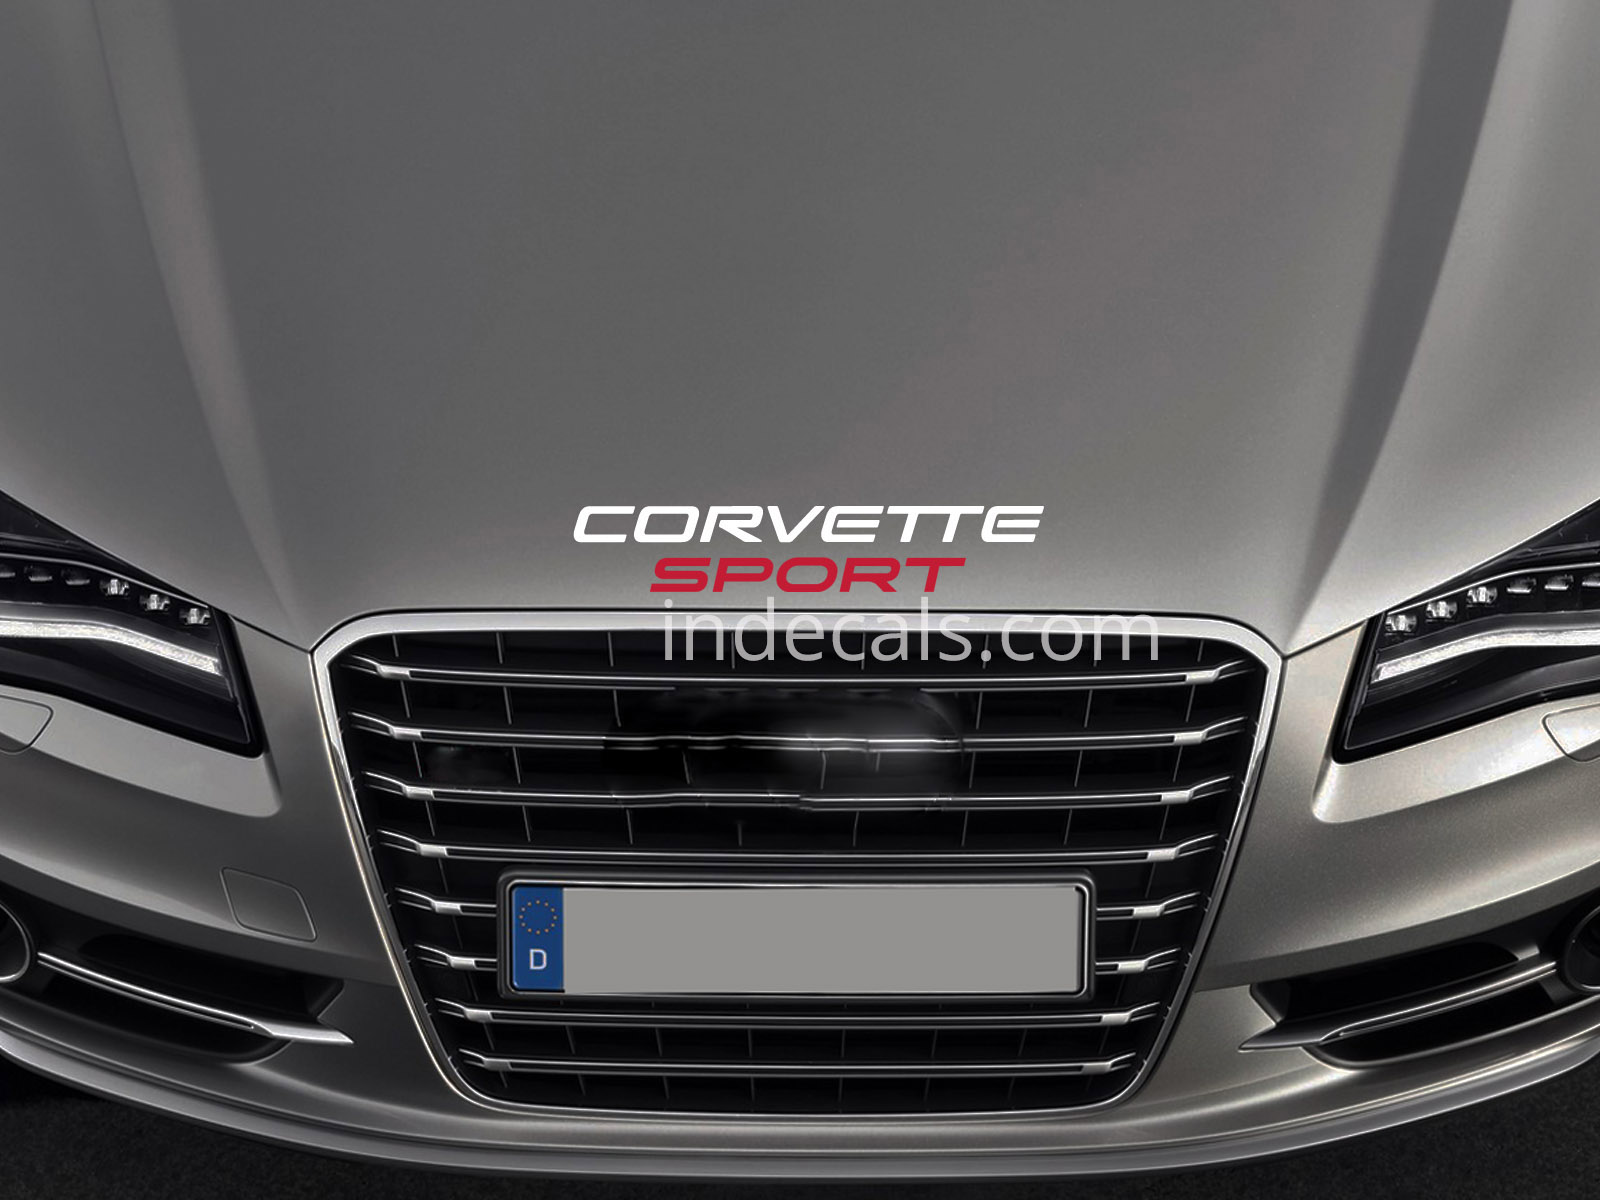 1 x Corvette Sport Sticker for Bonnet - White & Red